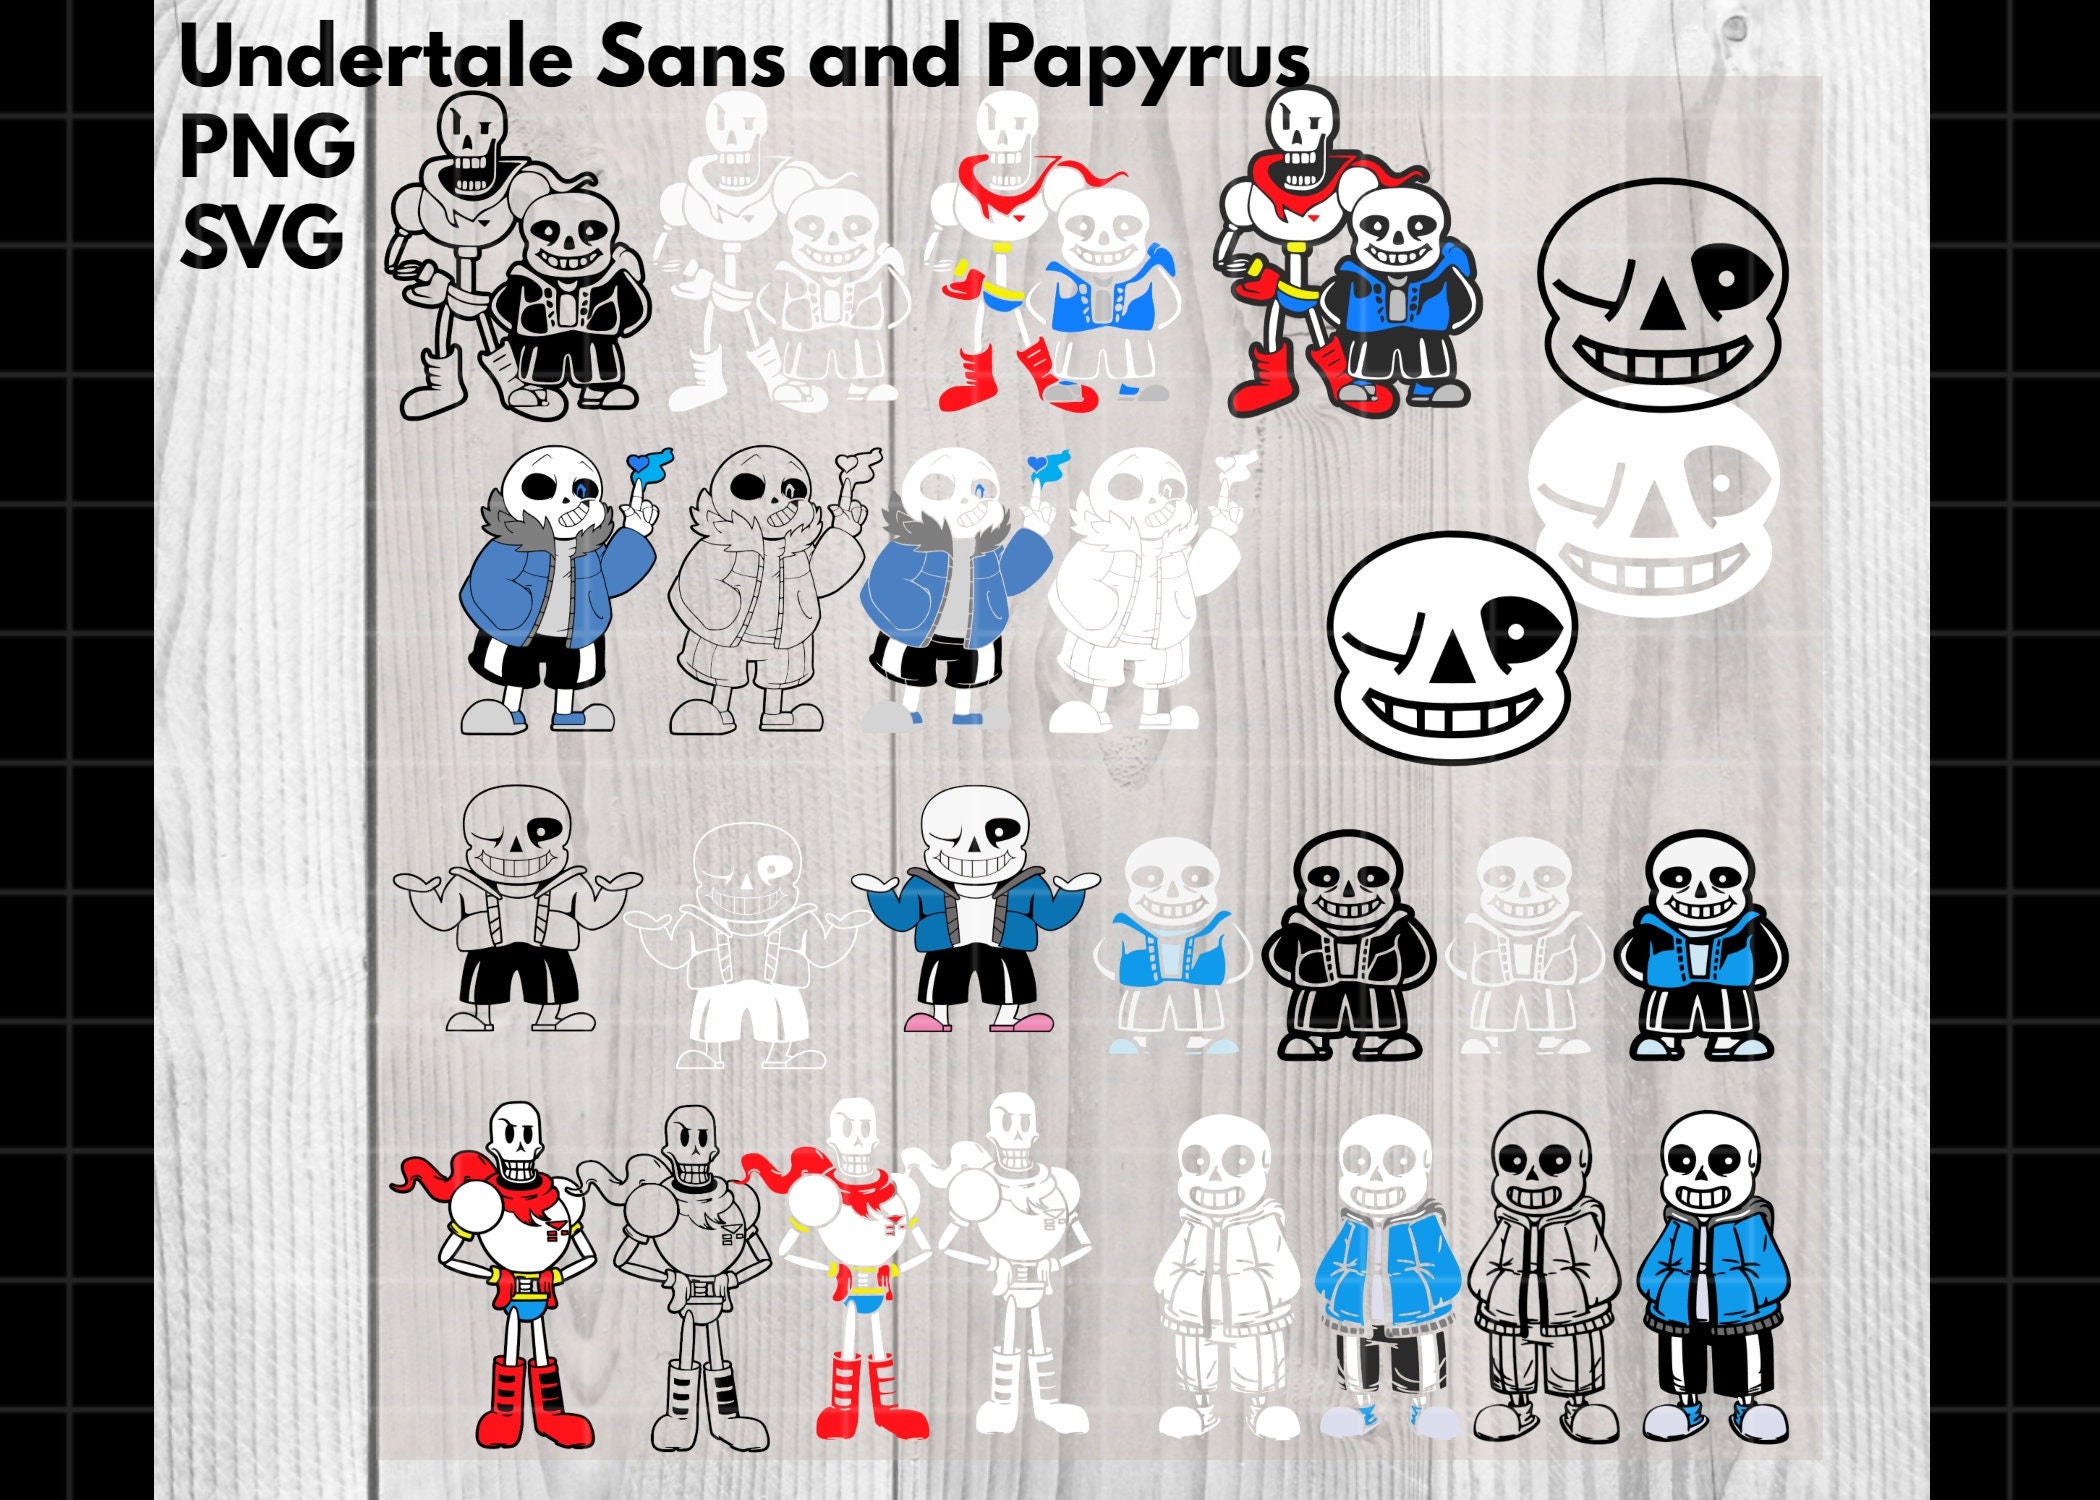 Horror Sans - Edit - Undertale Sans Pixel Art, clipart, transparent, png,  images, Download